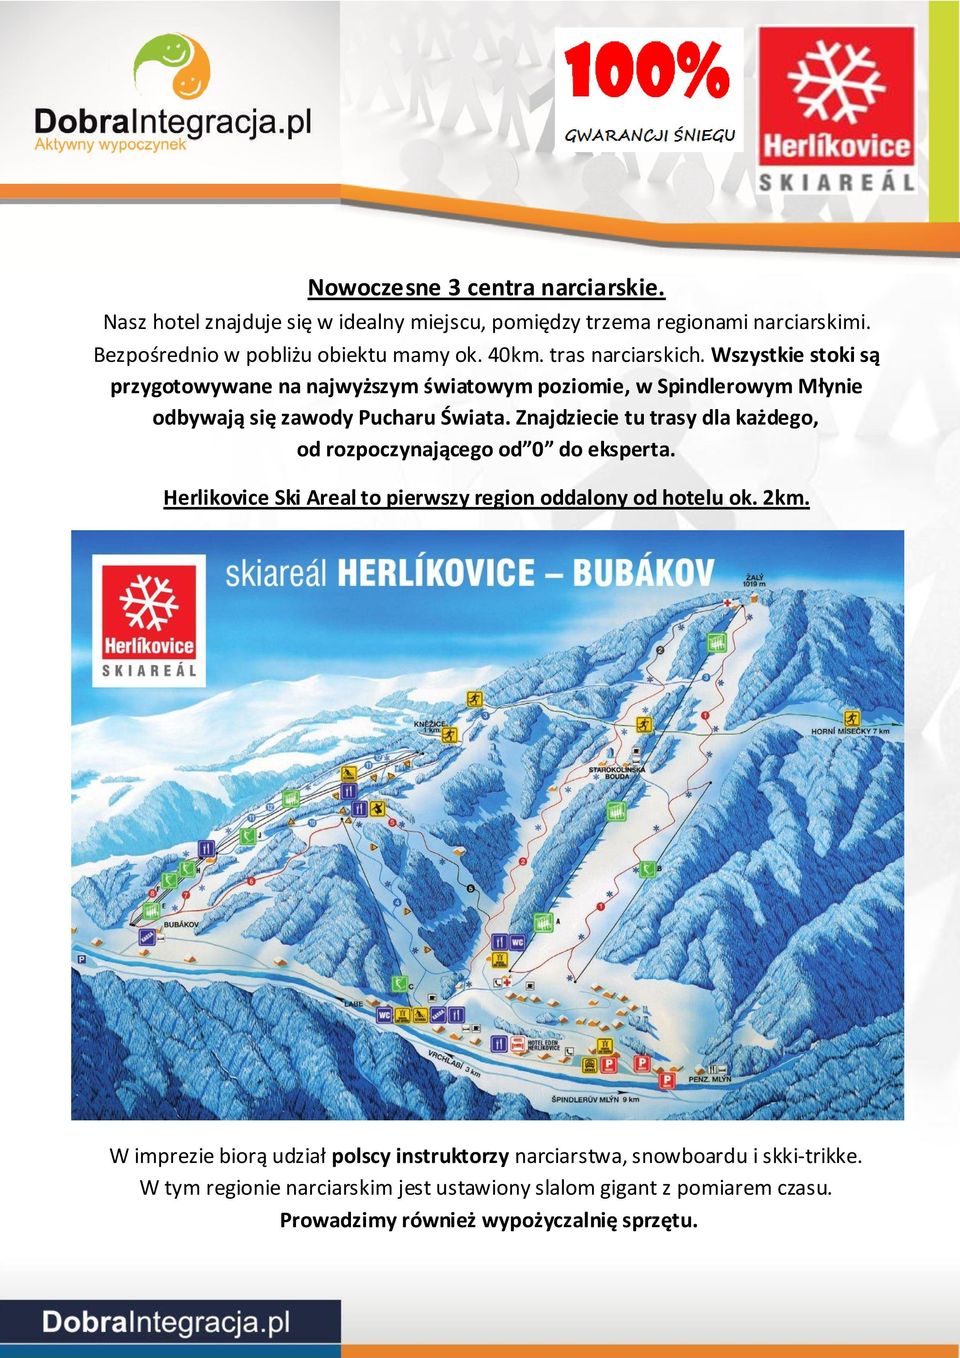 Znajdziecie tu trasy dla każdego, od rozpoczynającego od 0 do eksperta. Herlikovice Ski Areal to pierwszy region oddalony od hotelu ok. 2km.